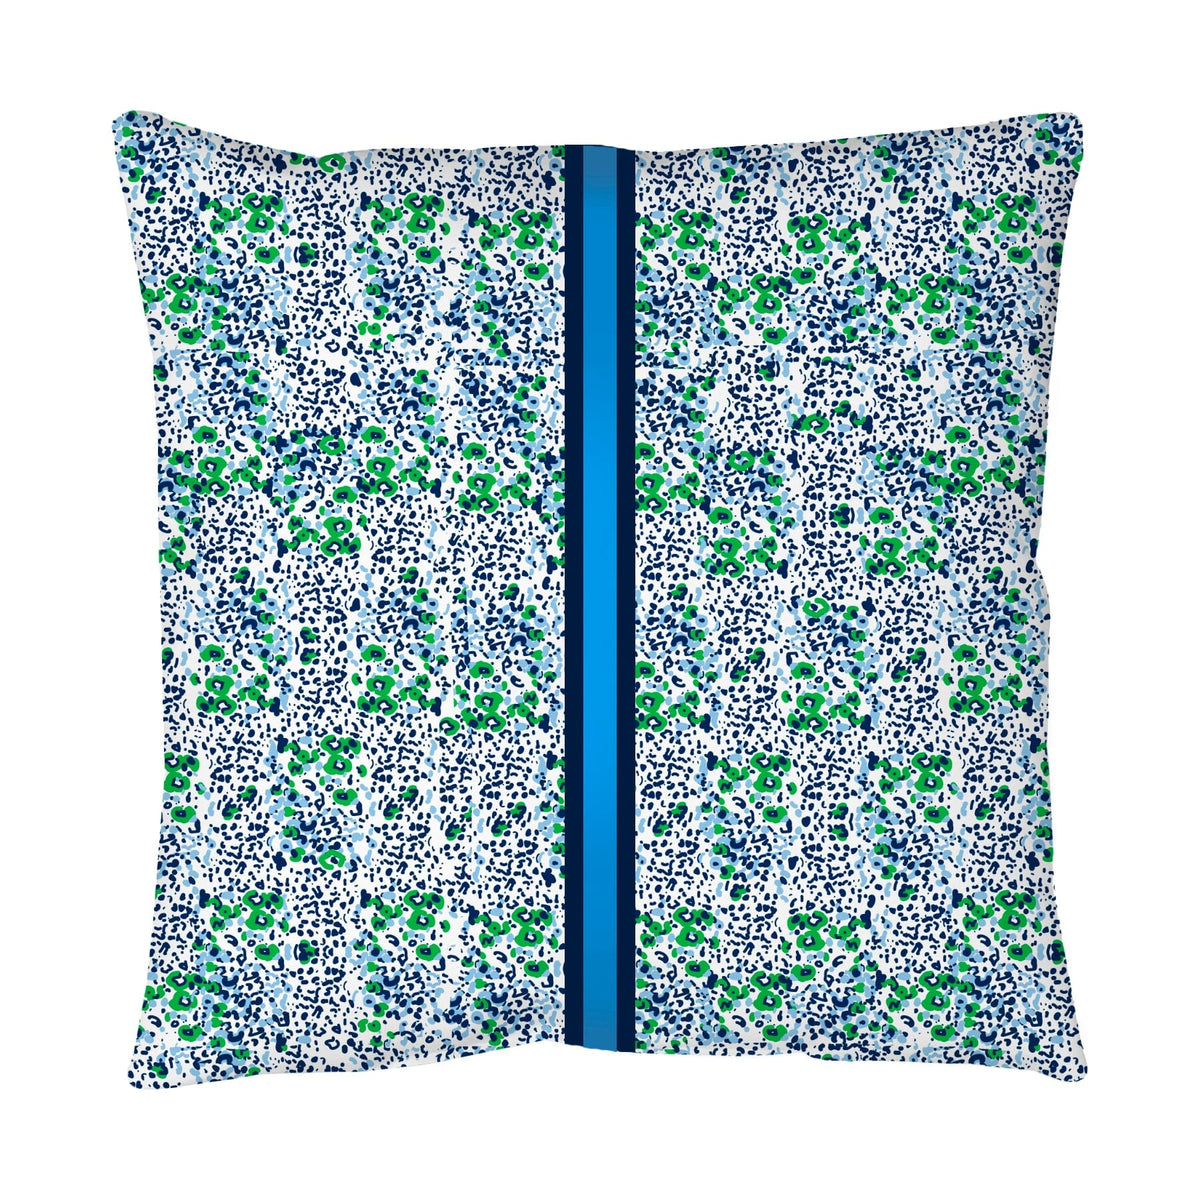 Euro/Floor Pillow - Poppy Field Blue & Green Bedding Collections, Pillows, Floor Pillows MWW 